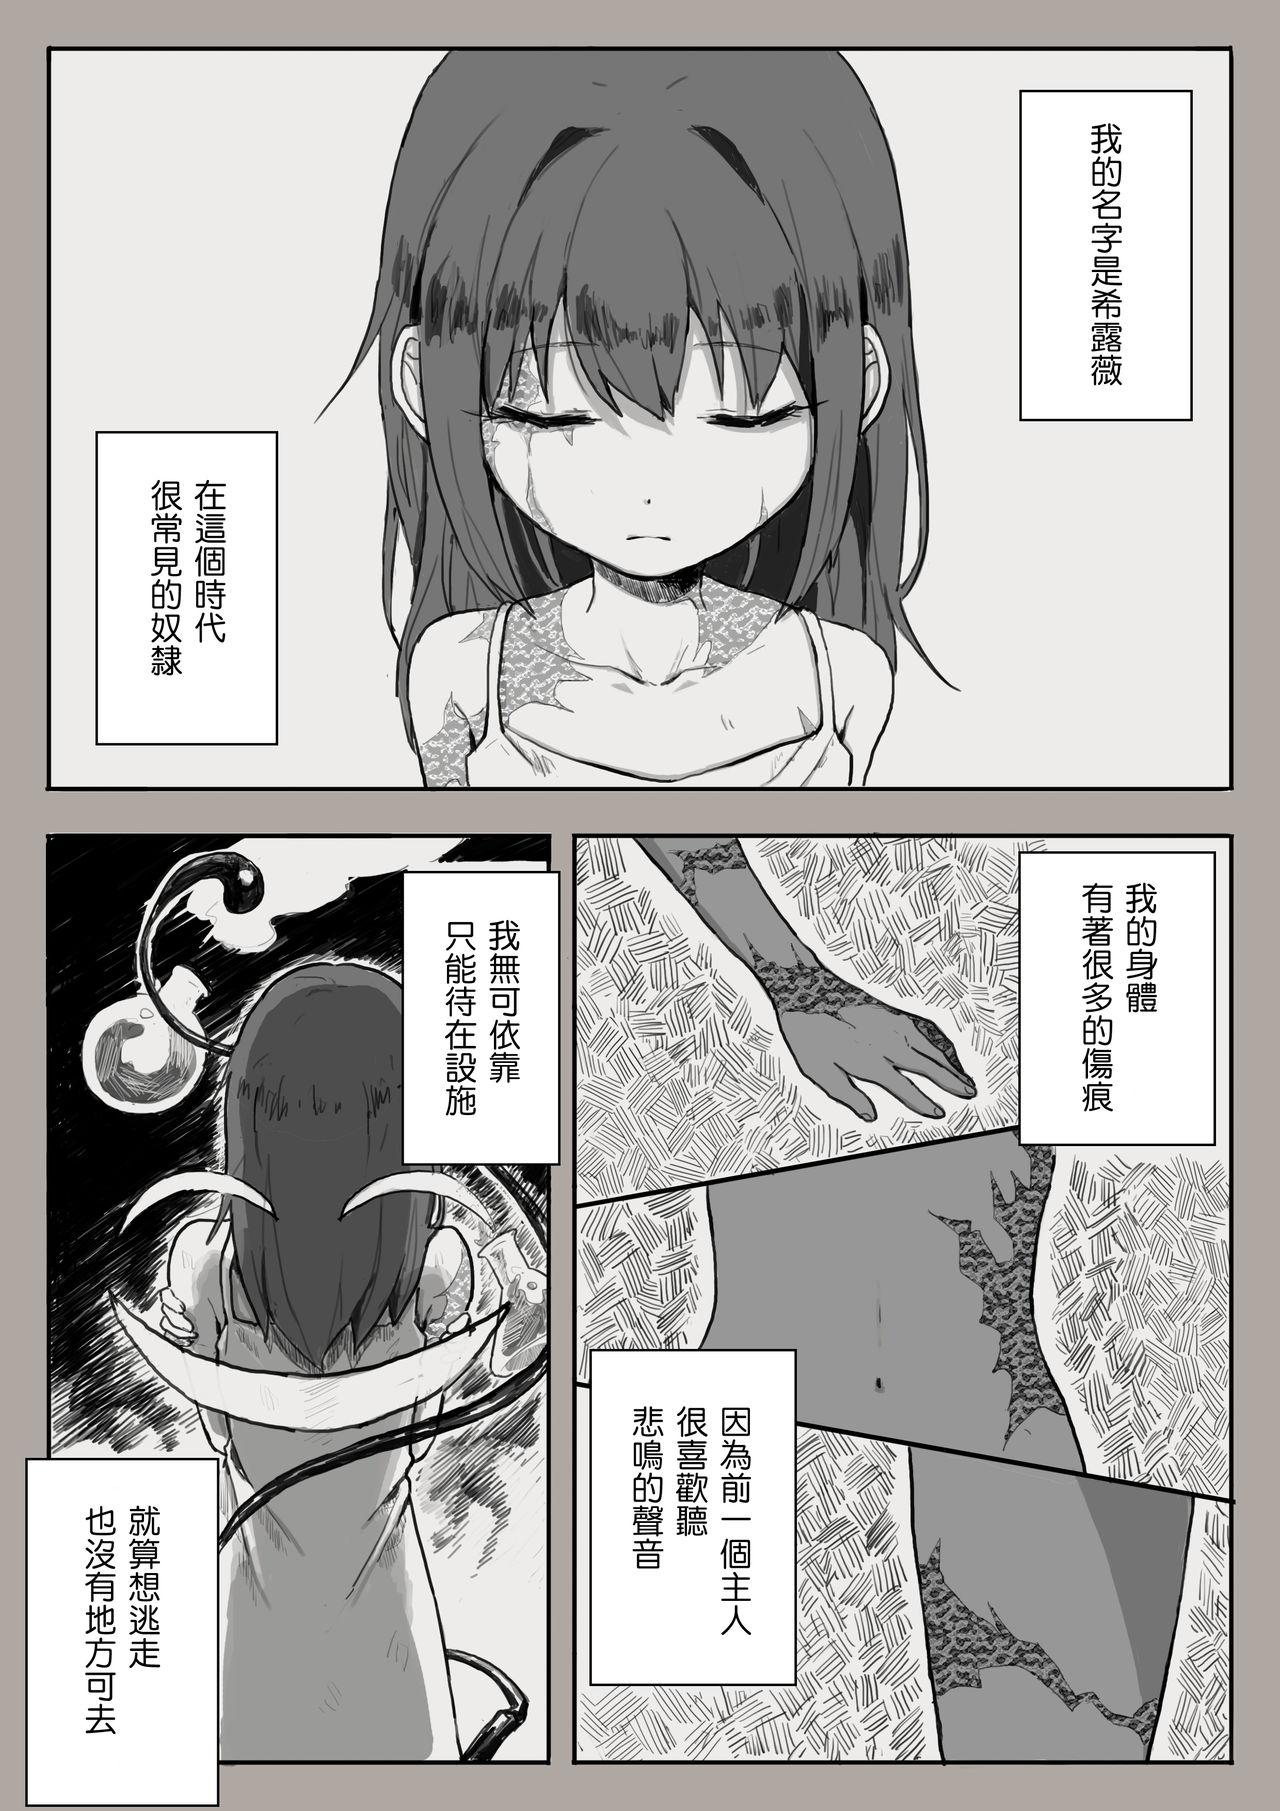 Trannies Dorei to no Seikatsu Iwai Nishuunen "Anata to Deaete" - Dorei to no seikatsu Classroom - Page 1